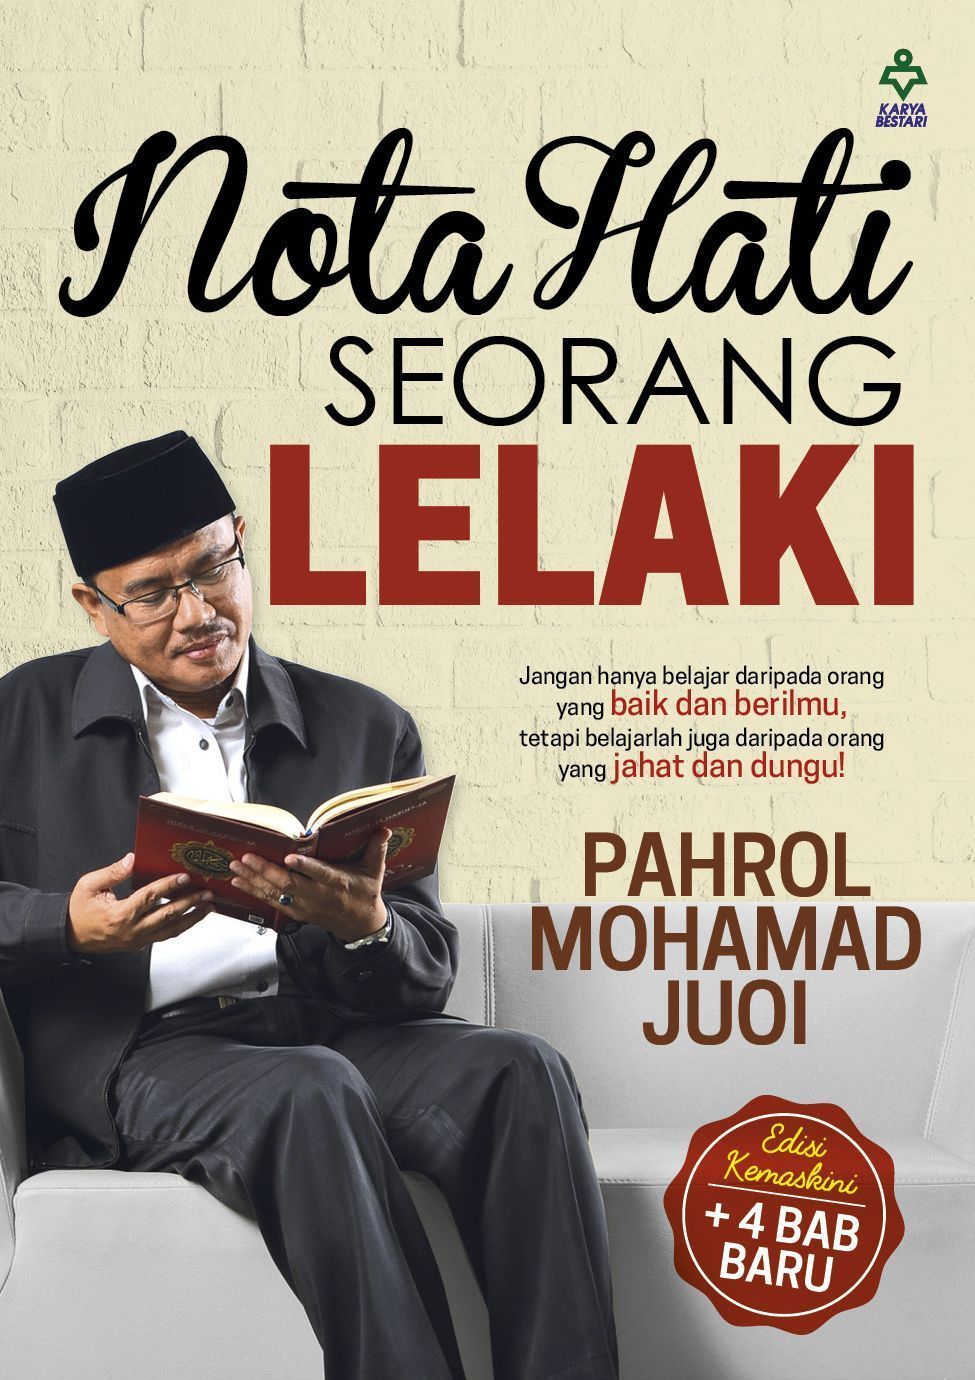 Karya Bestari Buku Nota Hati Seorang Lelaki by Ustaz Pahrol Mohd Juoi 201871